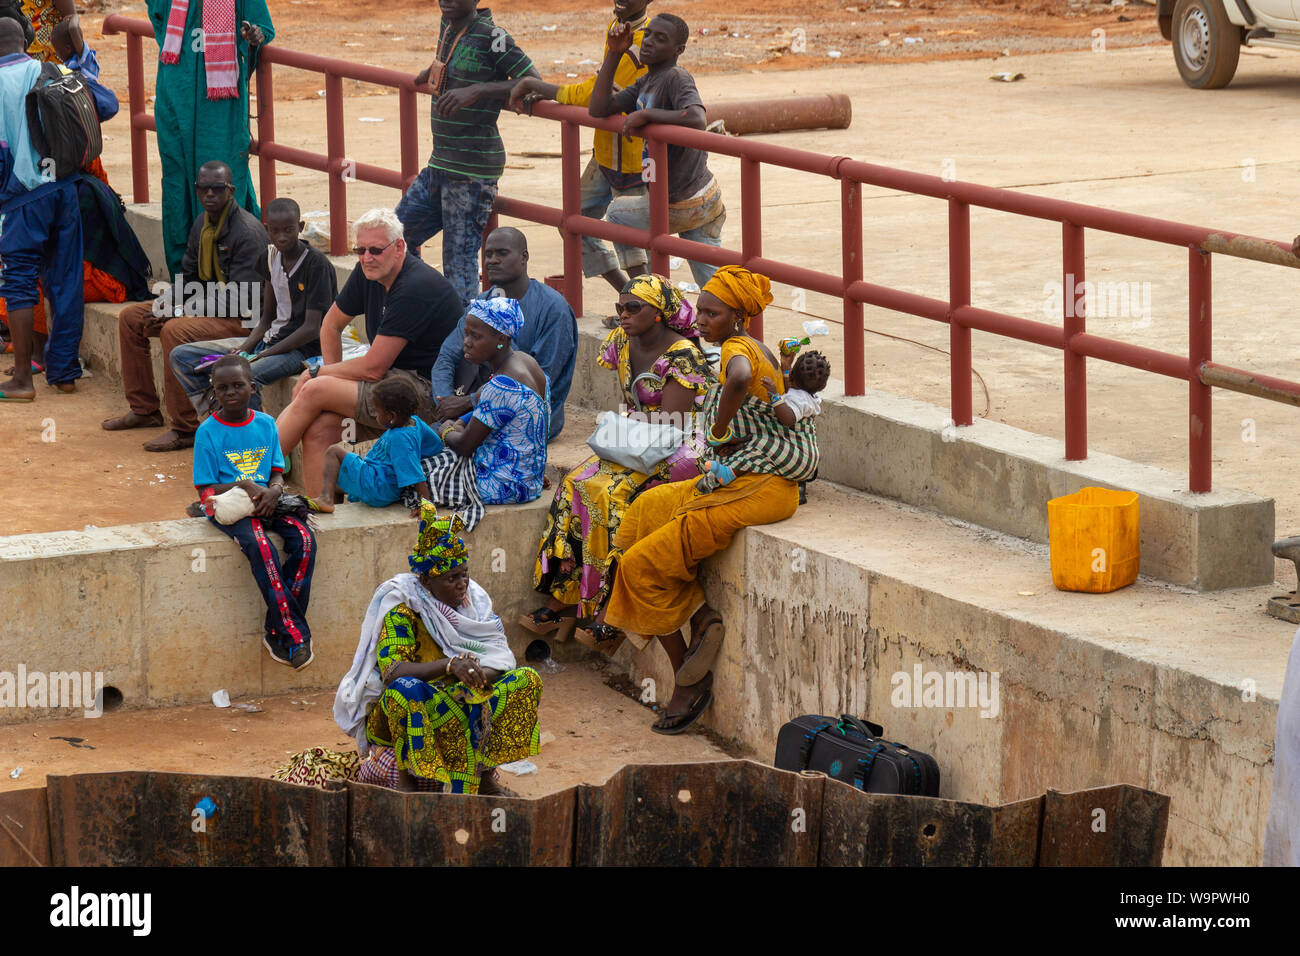 YELITENDA, Gambia - Jan 6, 2014: keine Brücke über den Fluss Gambia. Jeder hat an der Reihe warten. Frauen in bunten Kleidern. Stockfoto